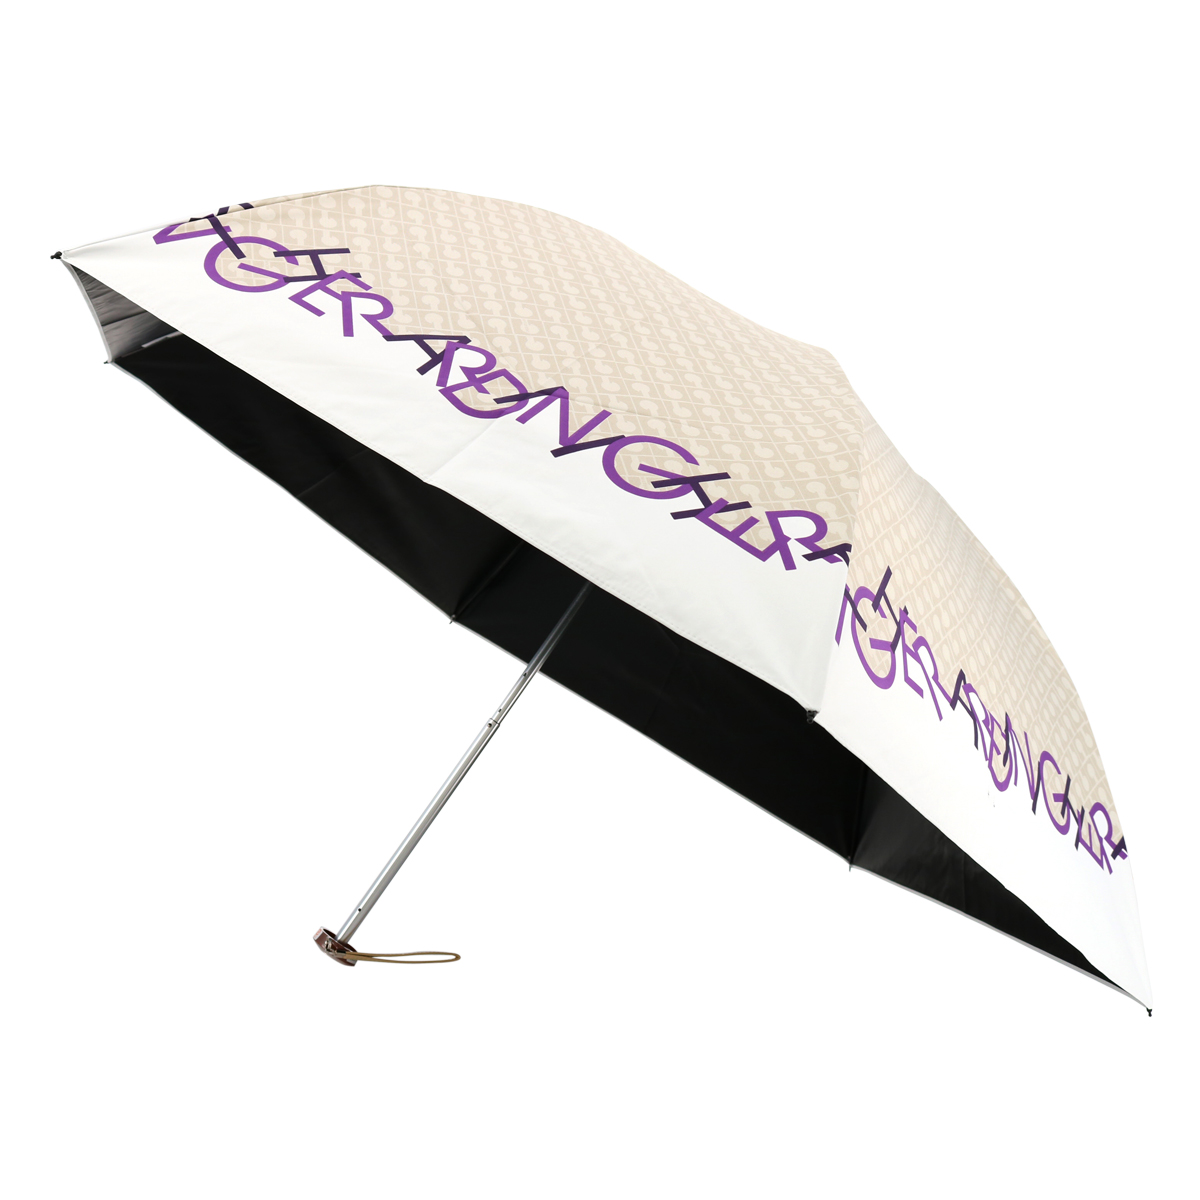 ゲラルディーニ 折りたたみ傘 レディース 1GD 17752-52 日本製 GHERARDINI 晴雨兼用 日傘 雨傘 UVカット 遮光 遮熱 軽量  カーボン骨使用 ブランド 90-99cm